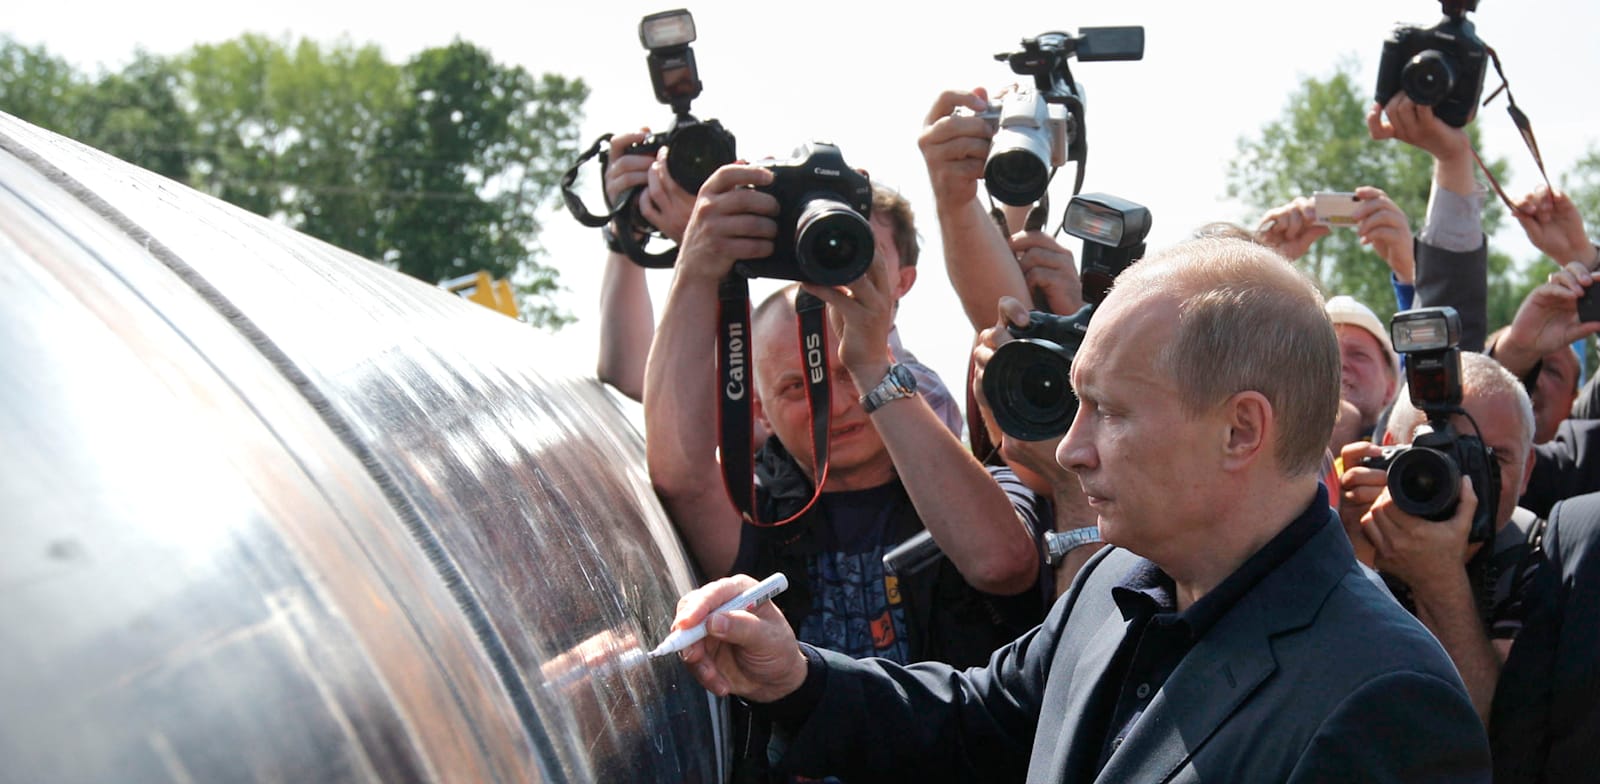 נשיא רוסיהפוטין חותם על צינור של גזפרום בולדיווסטוק, רוסיה / צילום: Associated Press, RIA- Novosti, Alexei Druzhinin